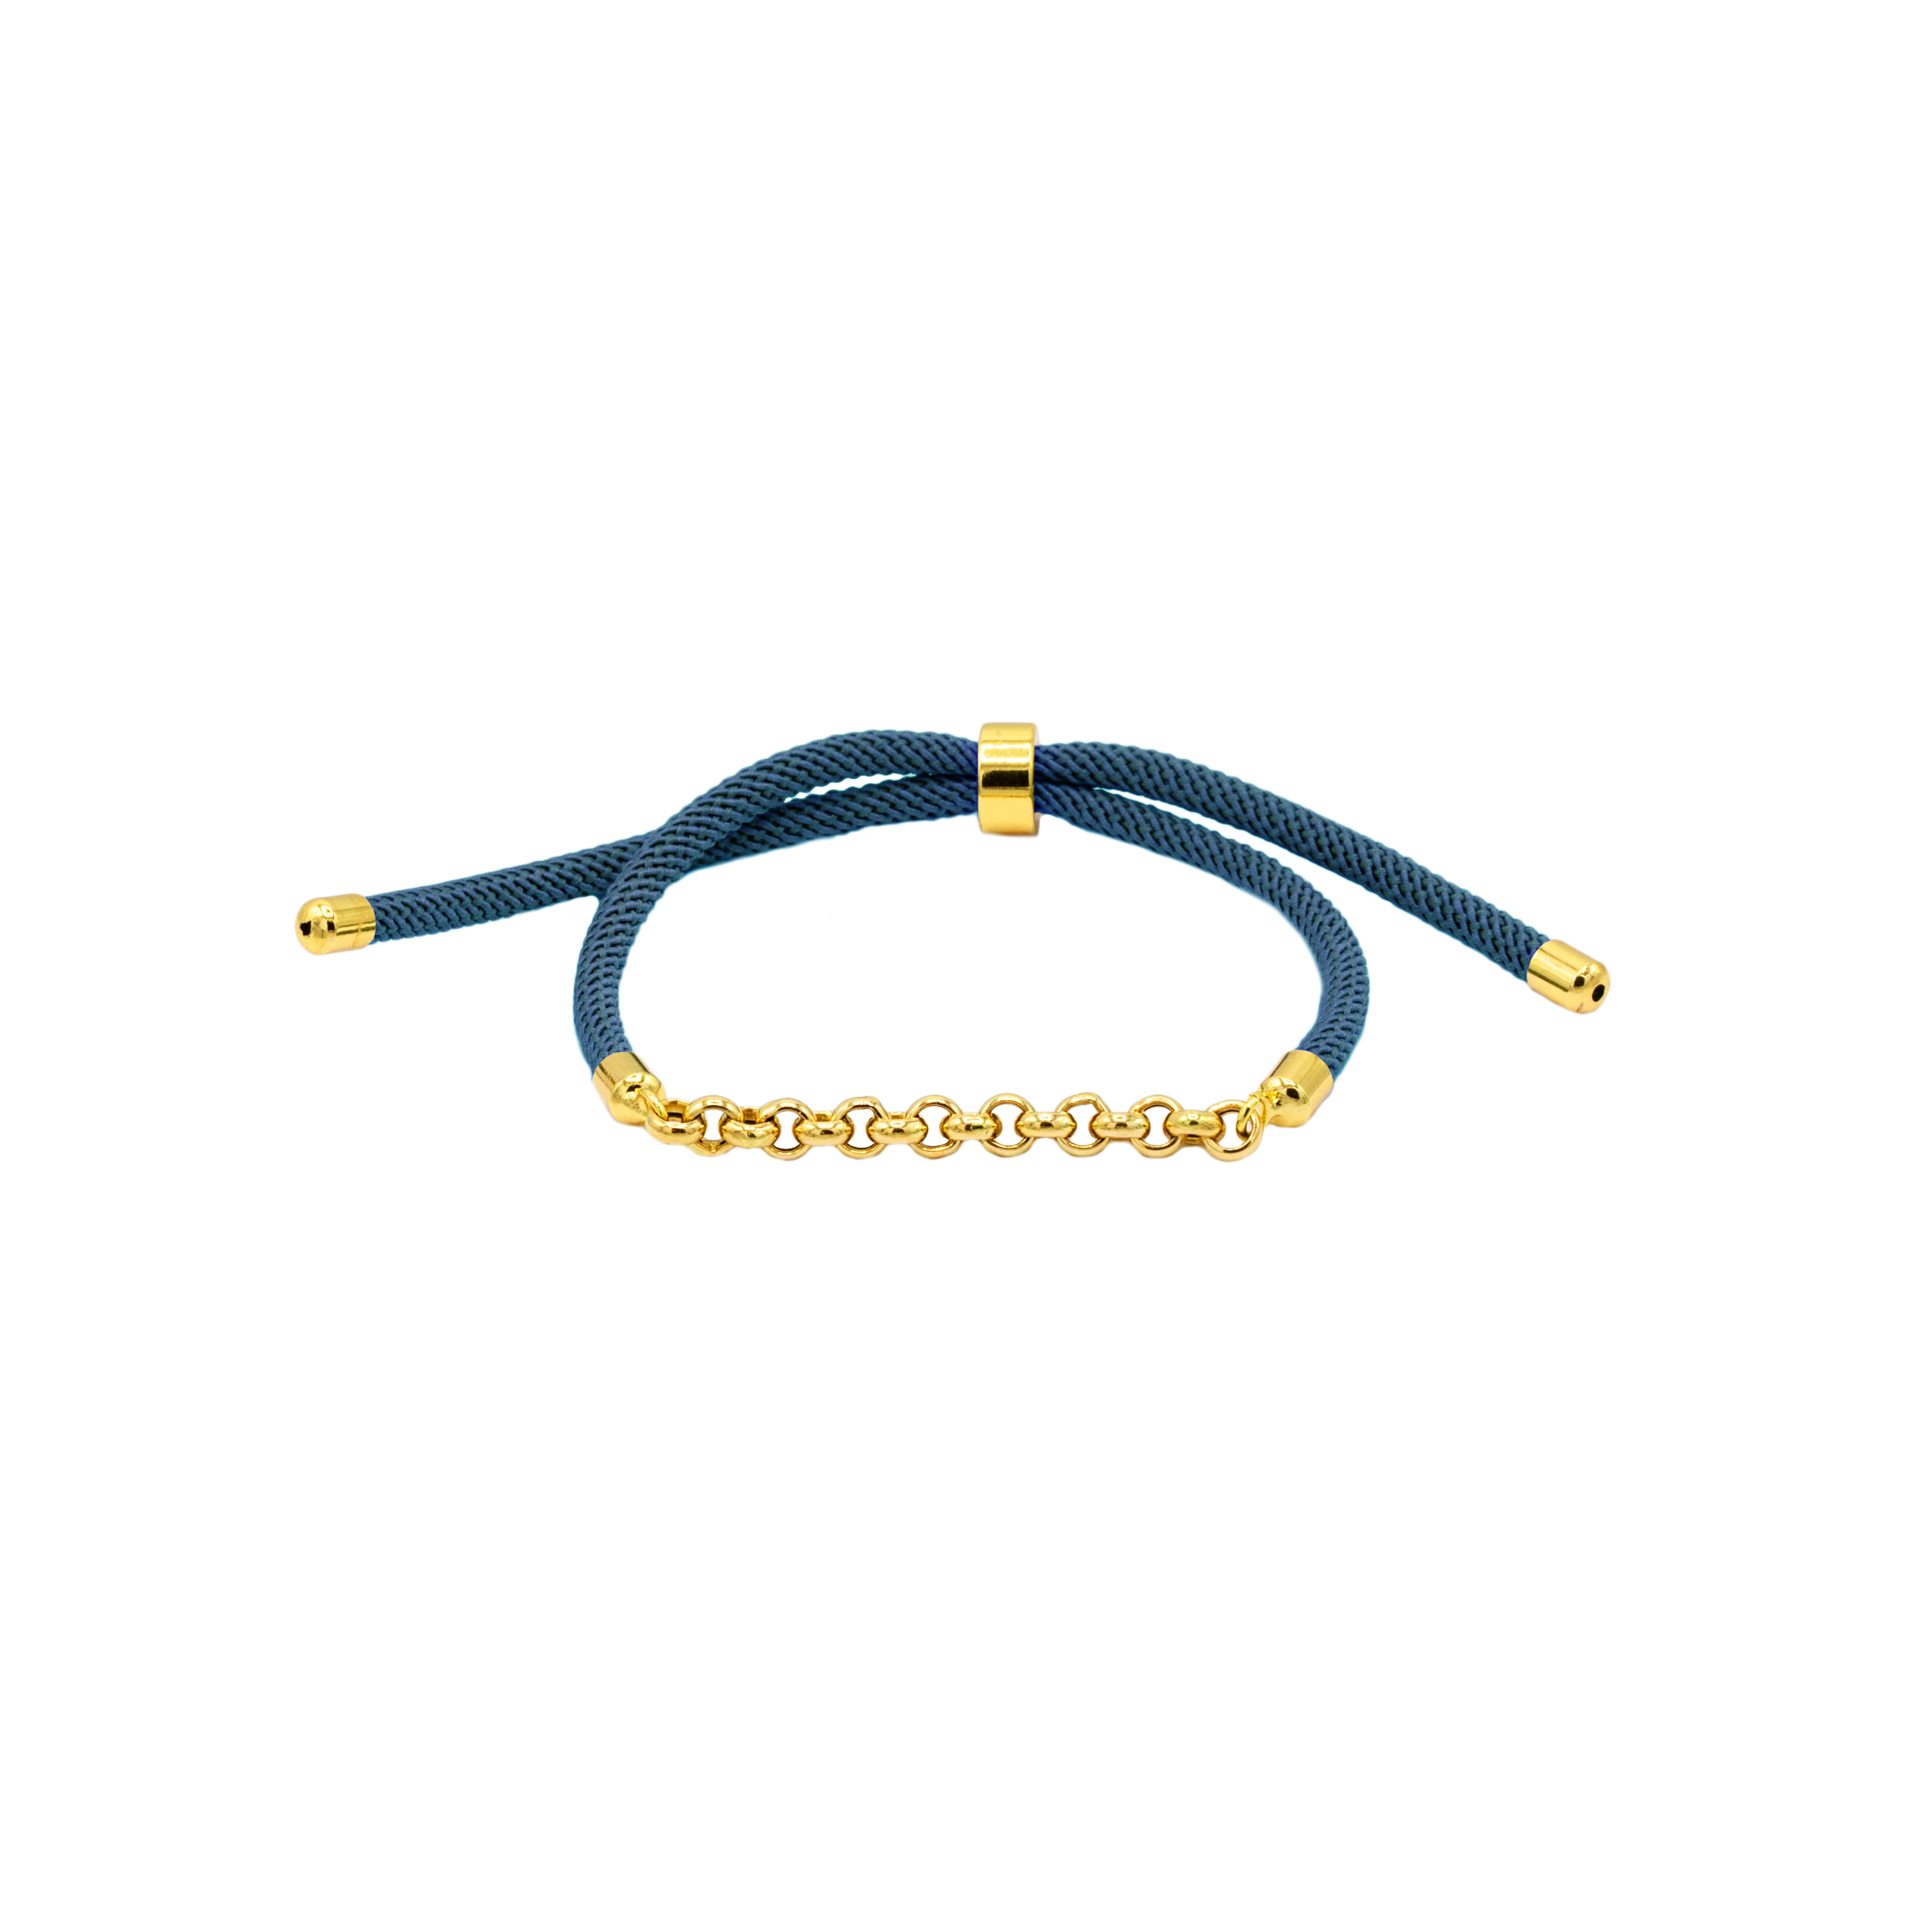 دستبند رولو و بند طنابی (16 حلقه) - الی گلد گالری